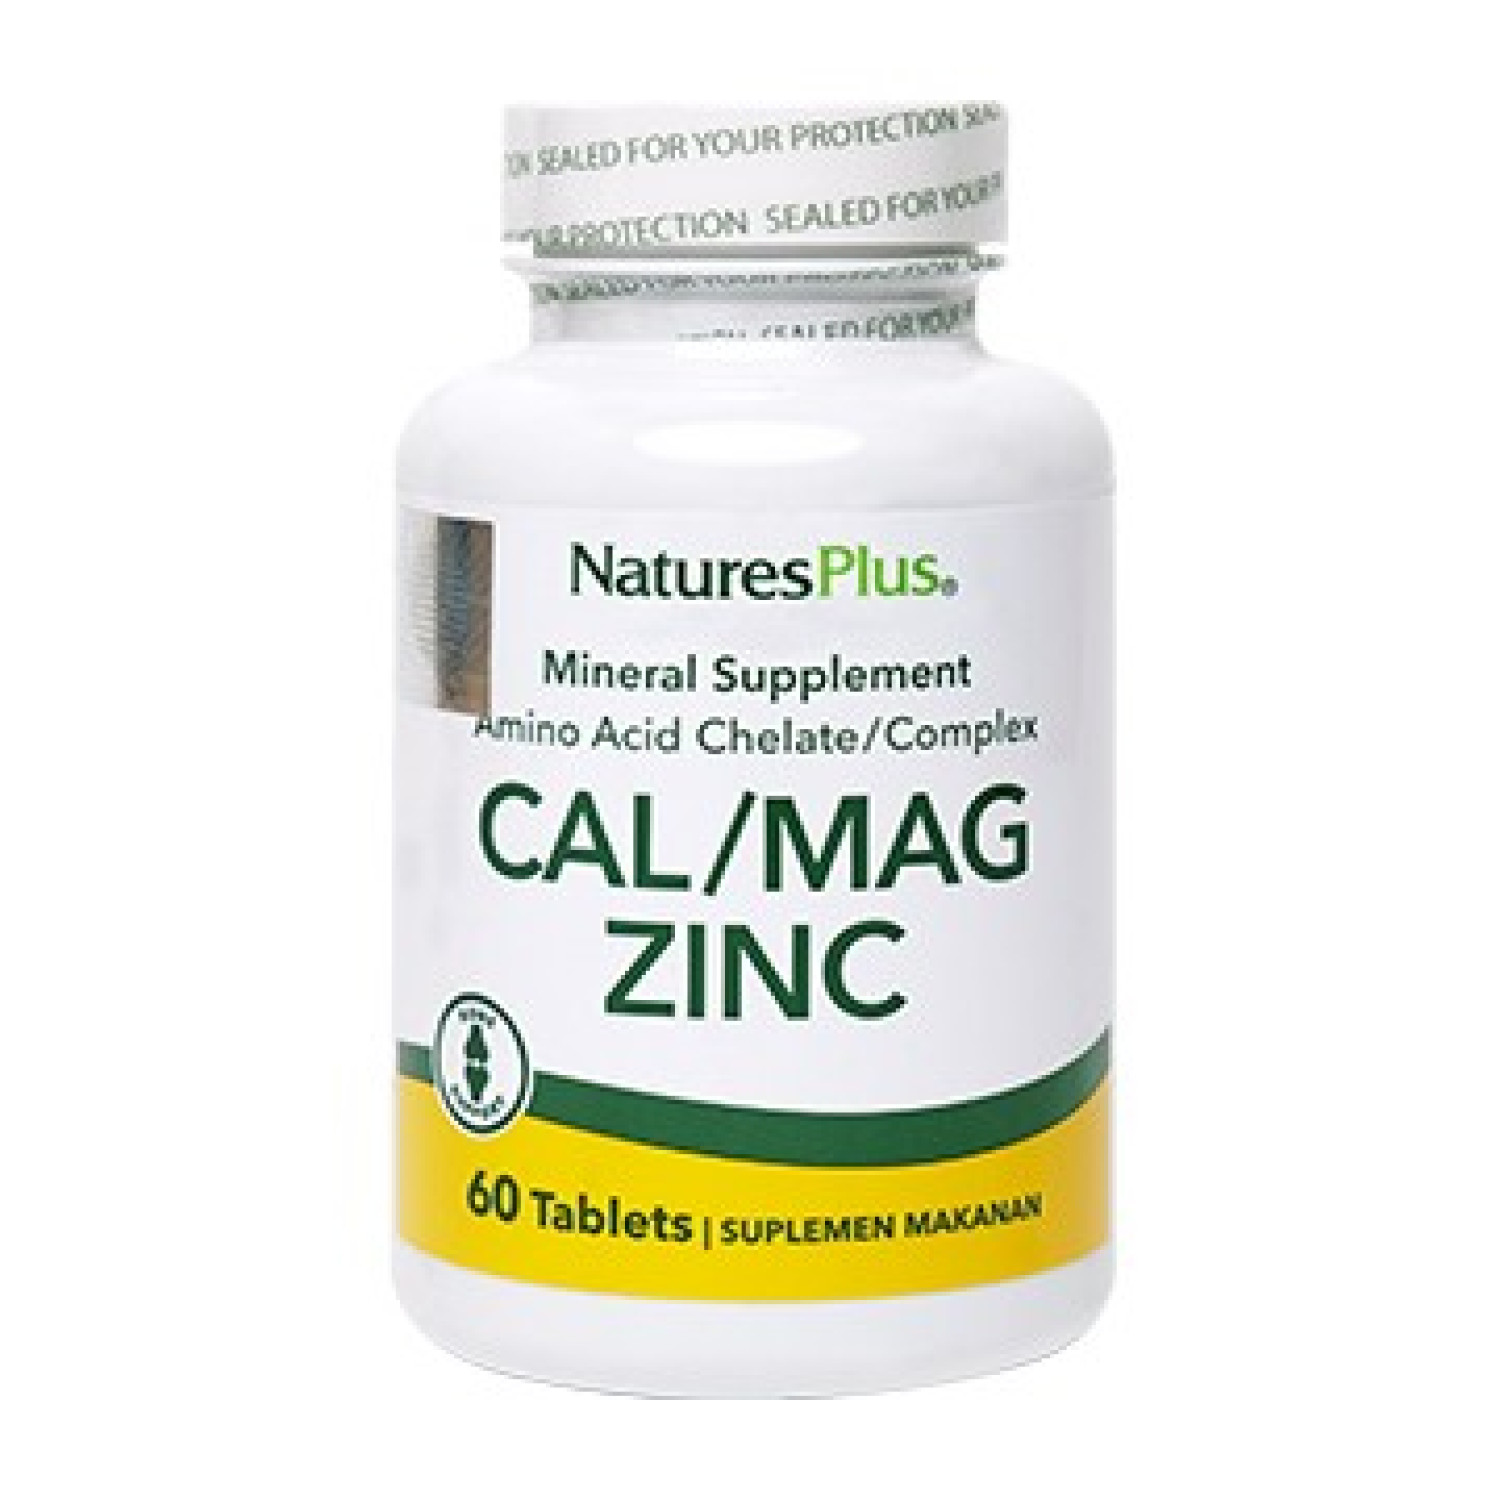 natures-plus-cal-mag-zinc-60-tablets-6566ac14d234e.jpeg